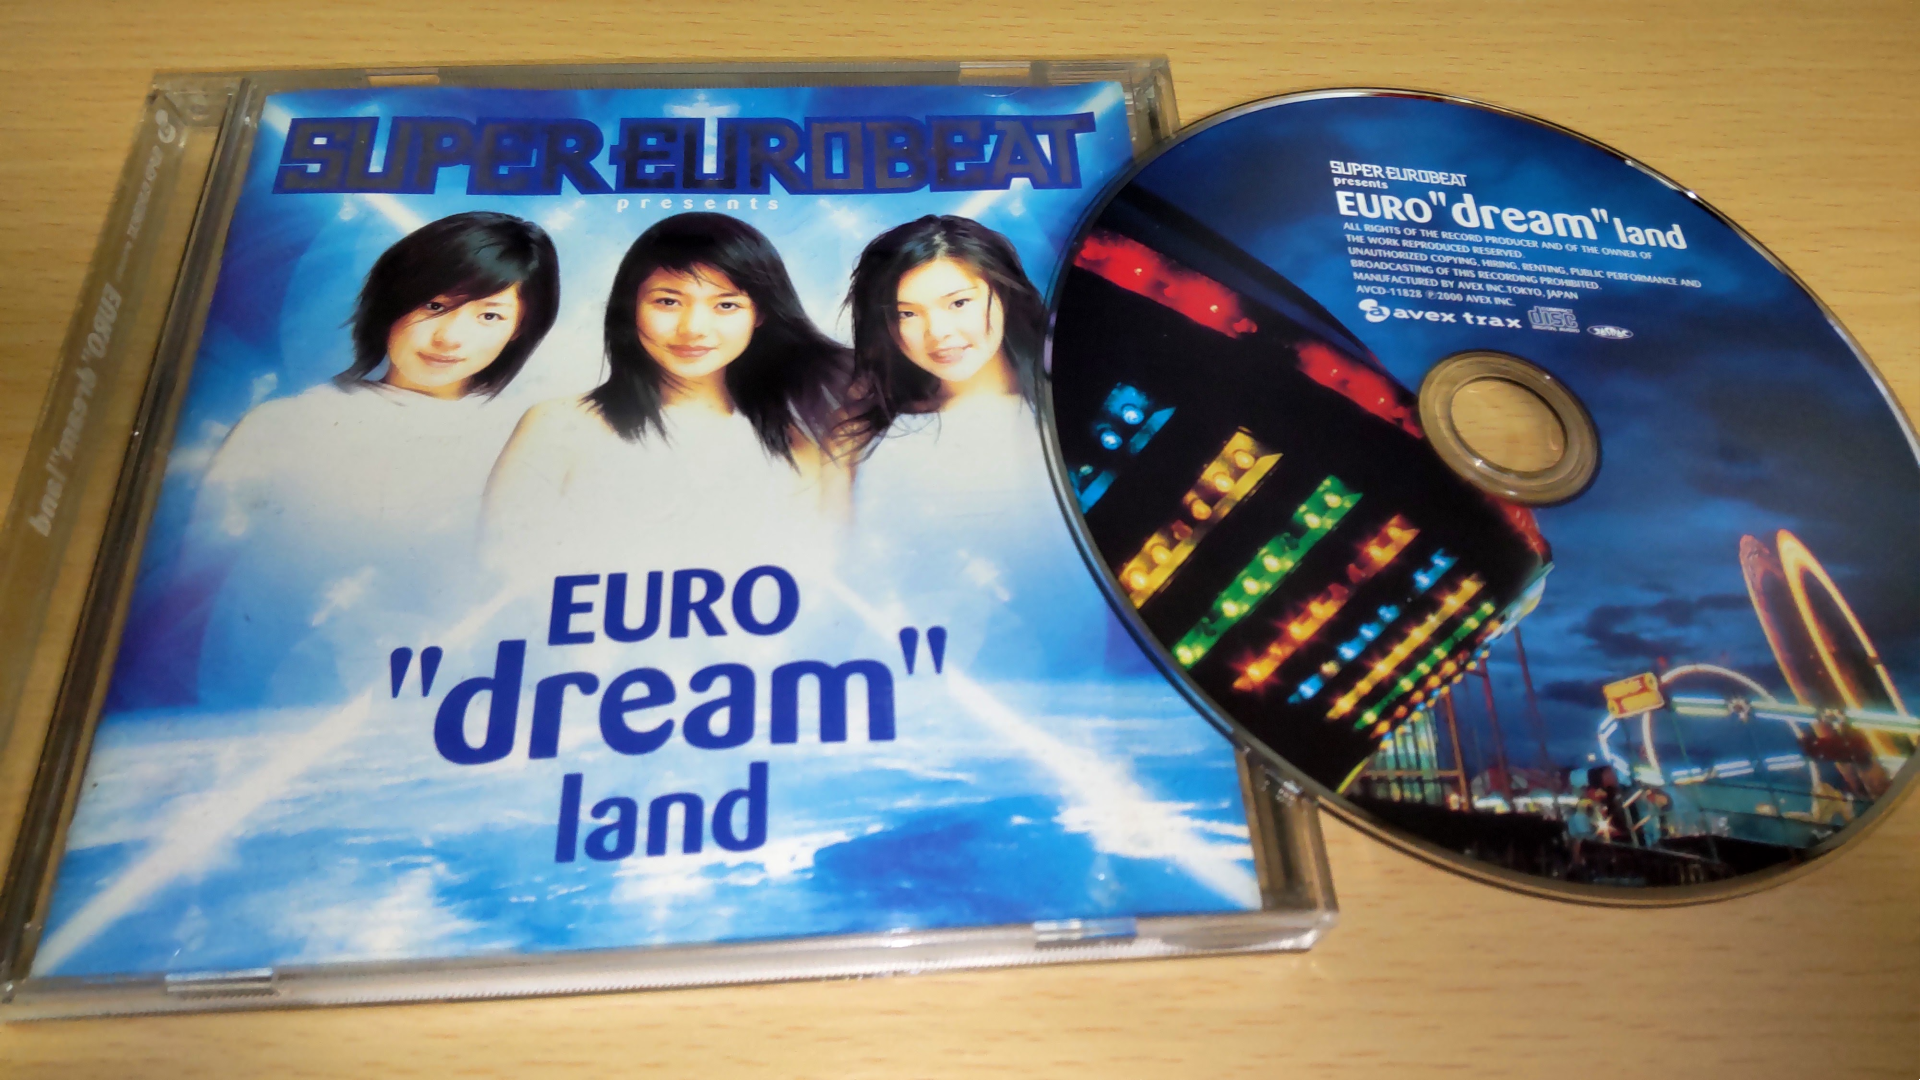 1期dreamのユーロビートRemix&カバーEP「EURO dream land」をご紹介し